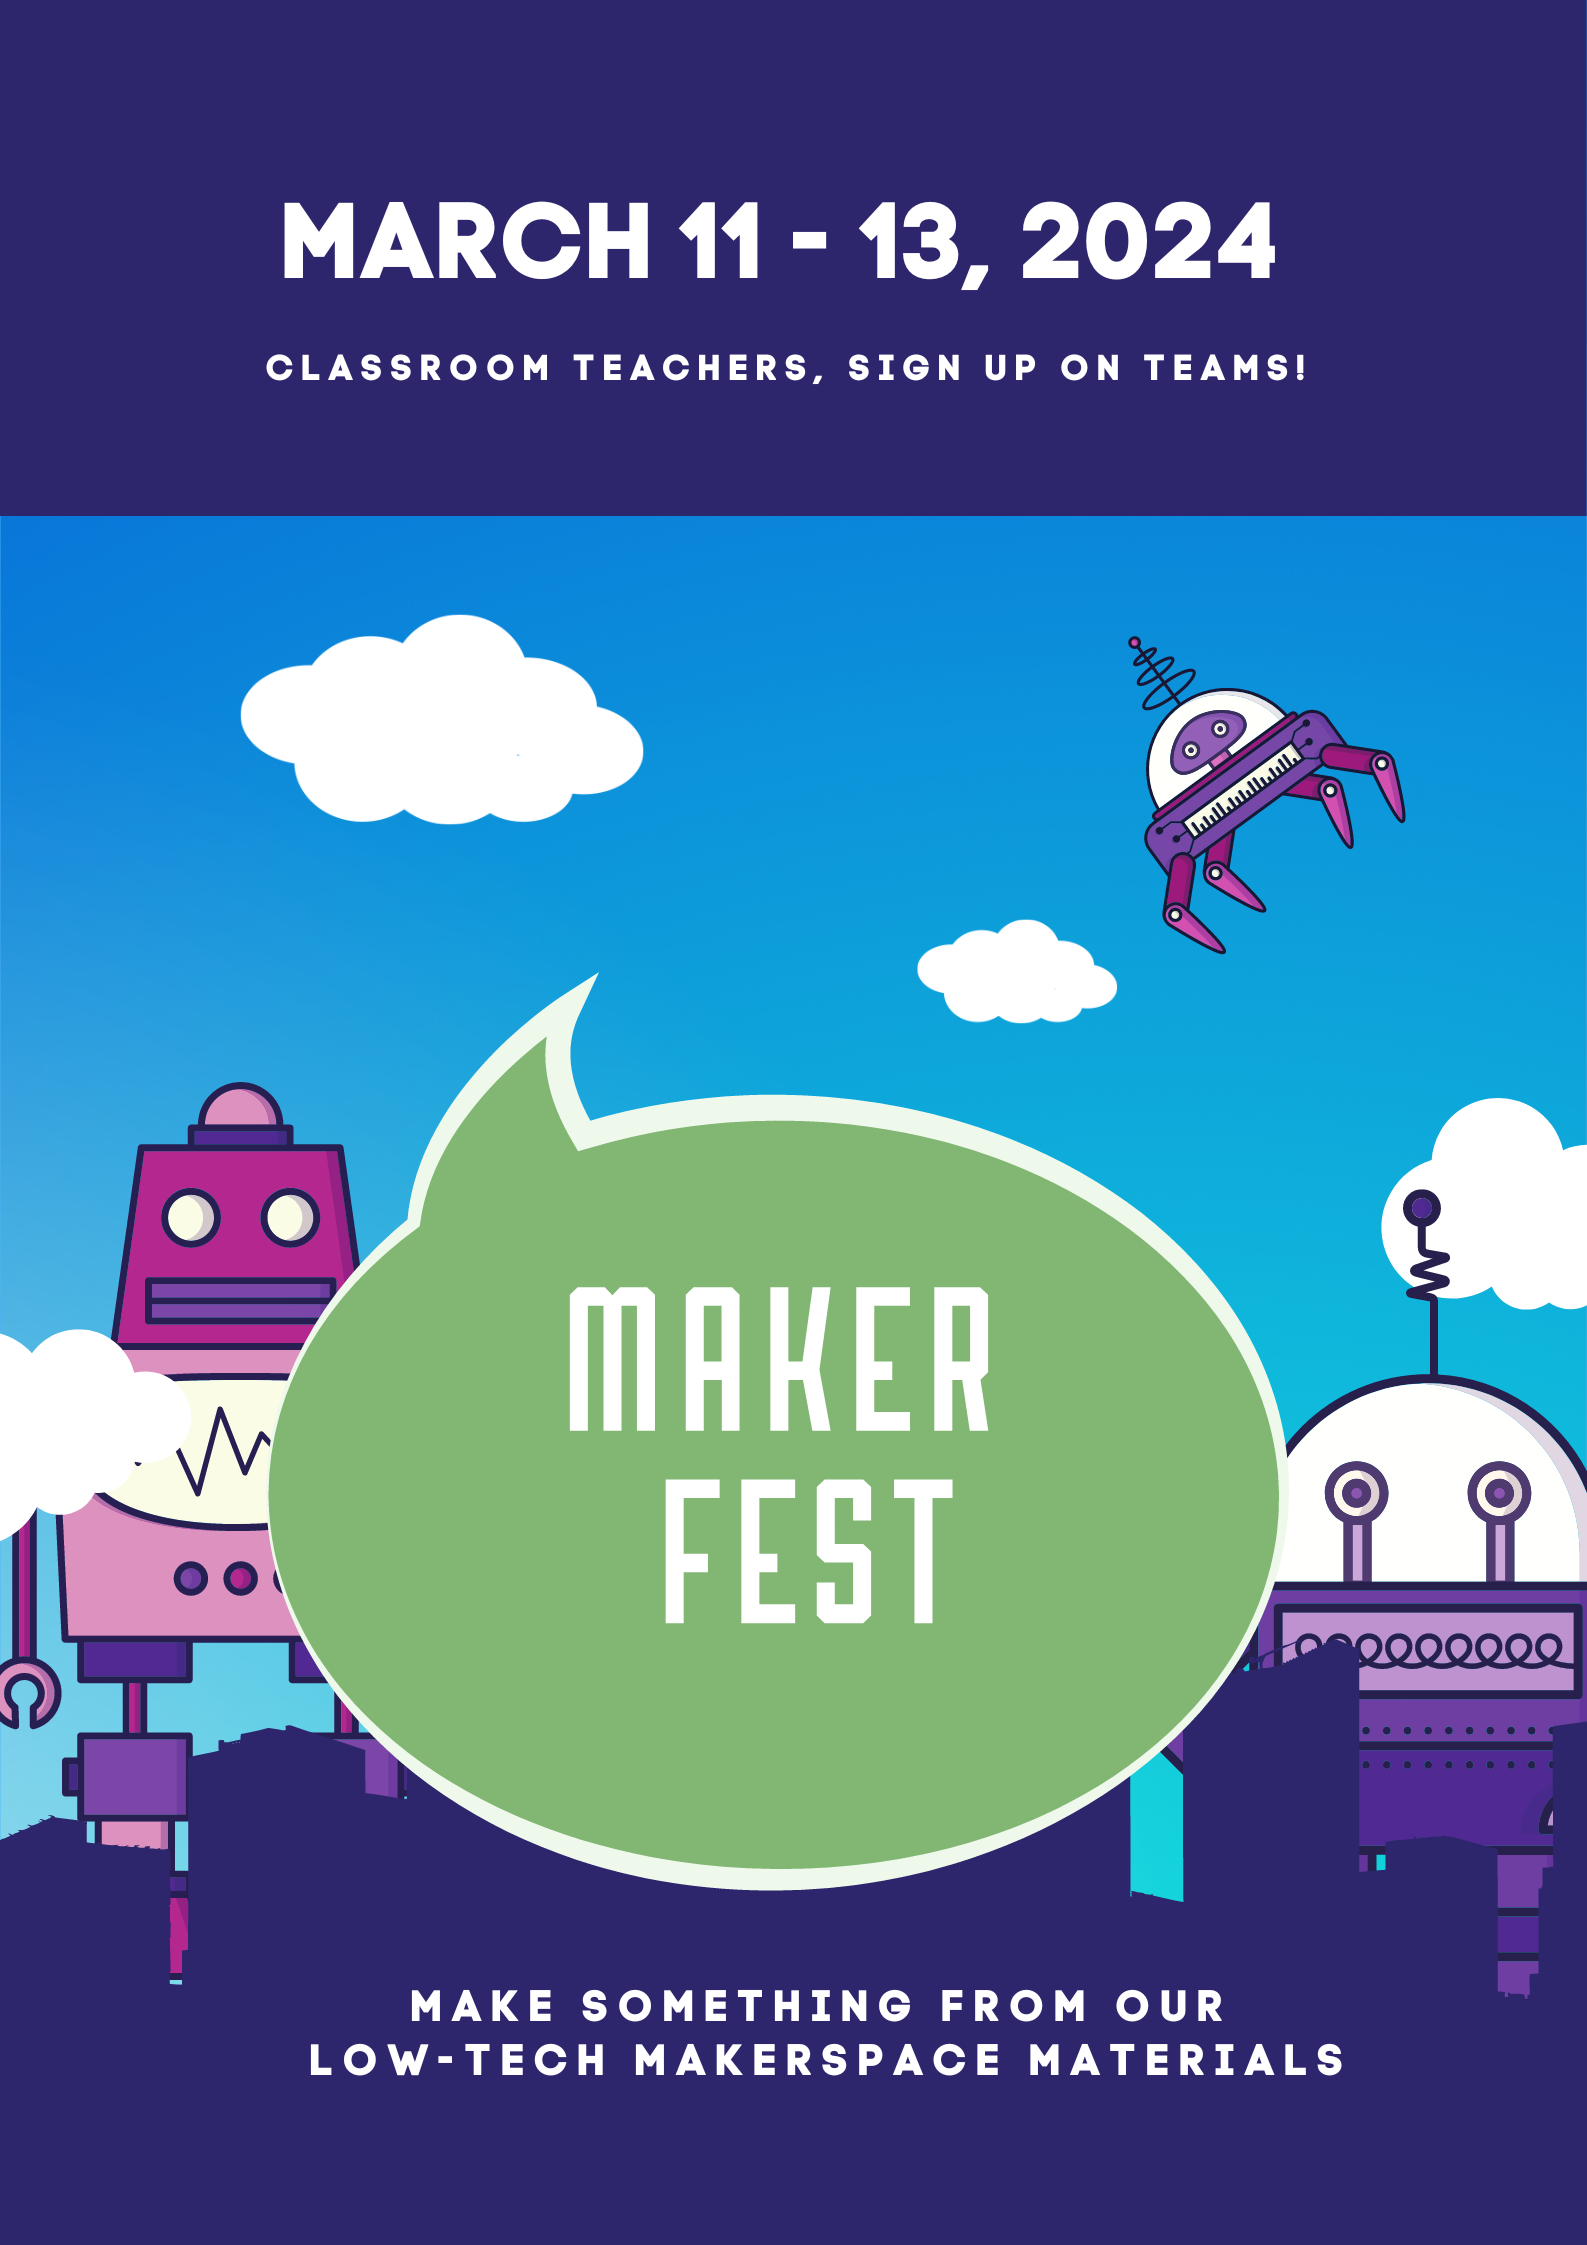 Maker Fest